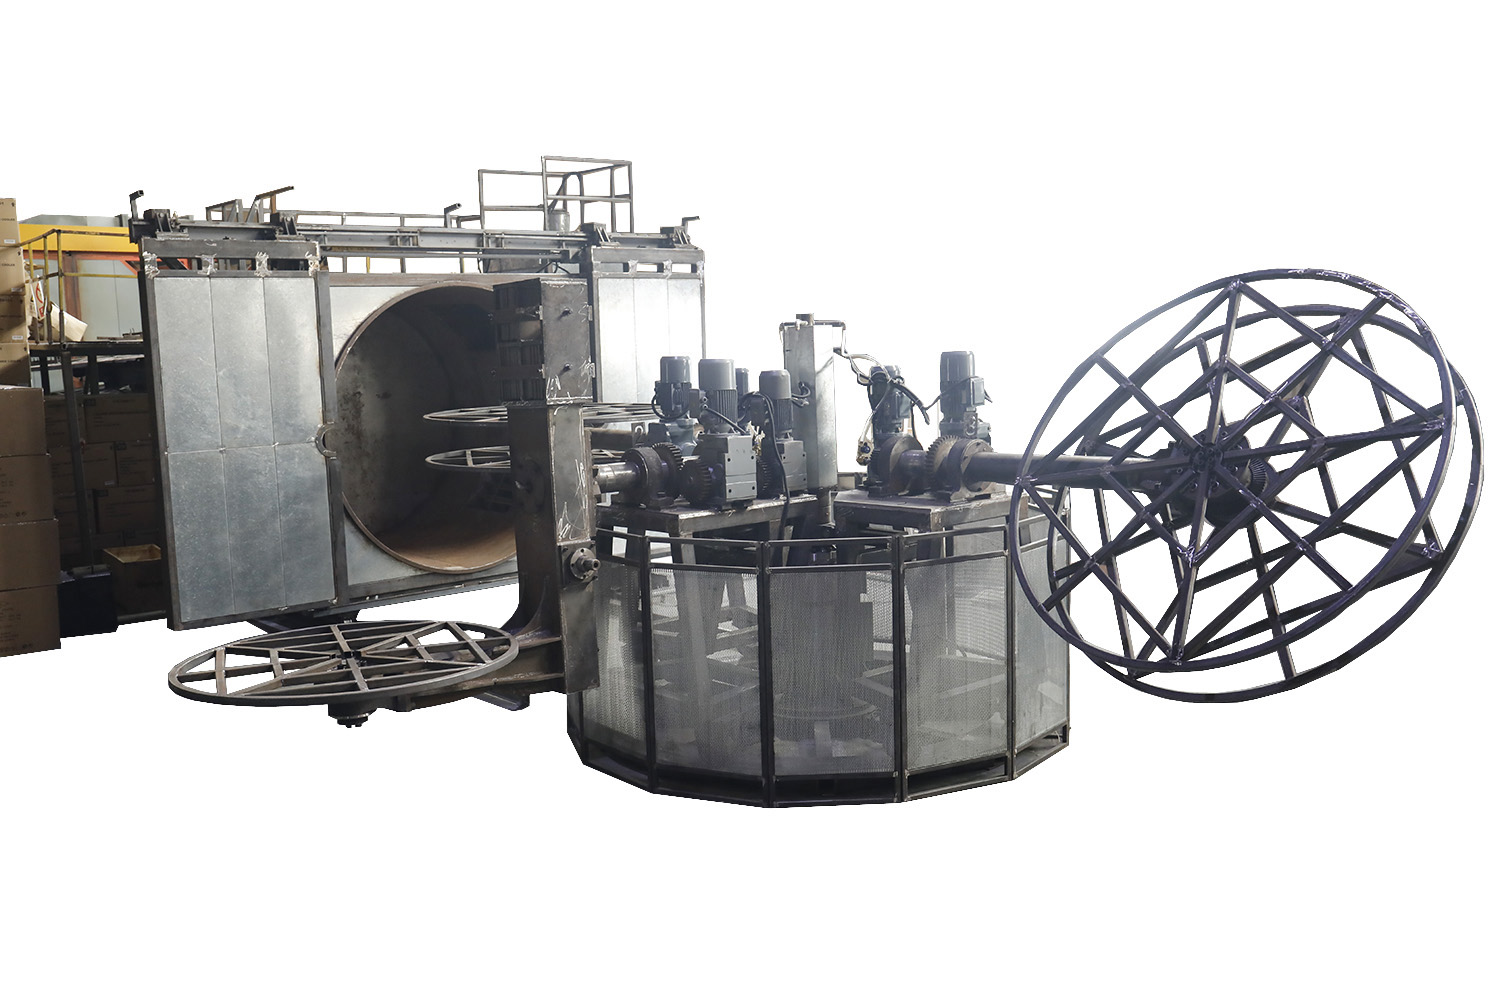 4 karú Carousel forgóformázó gép víztartályokhoz Kínában